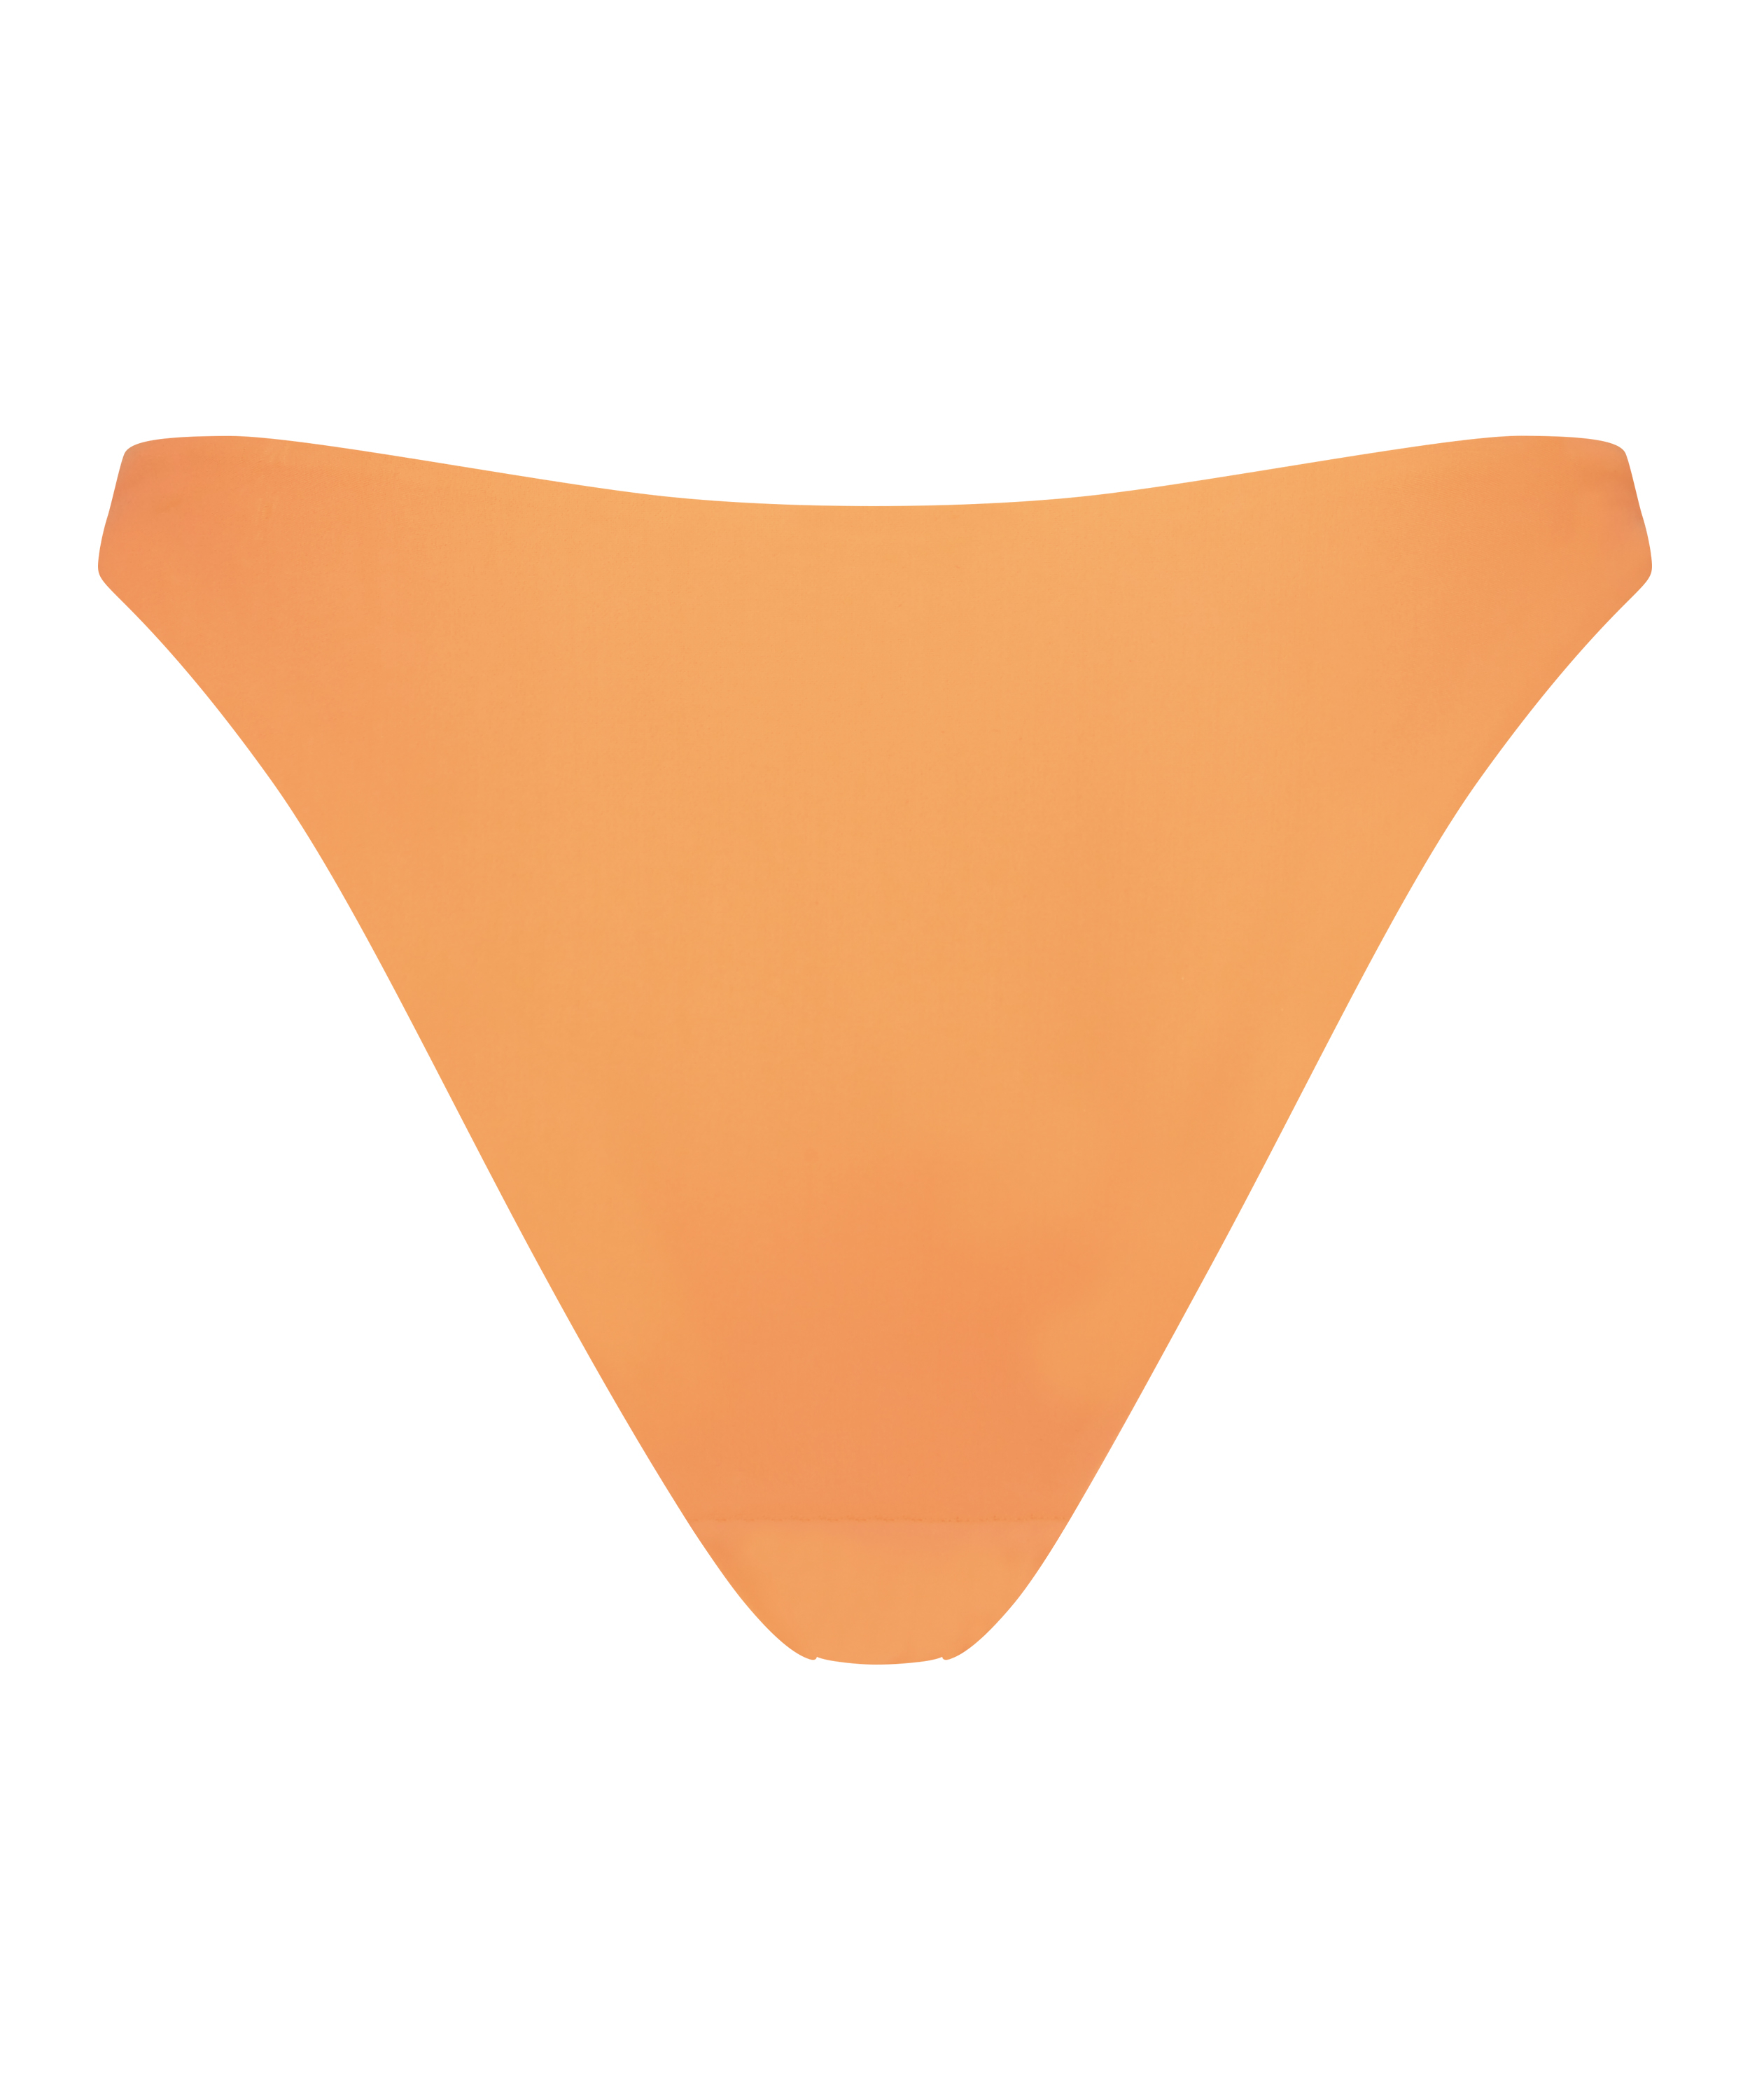 Bikiniunterteil mit hohem Beinausschnitt Juicy, Orange, main